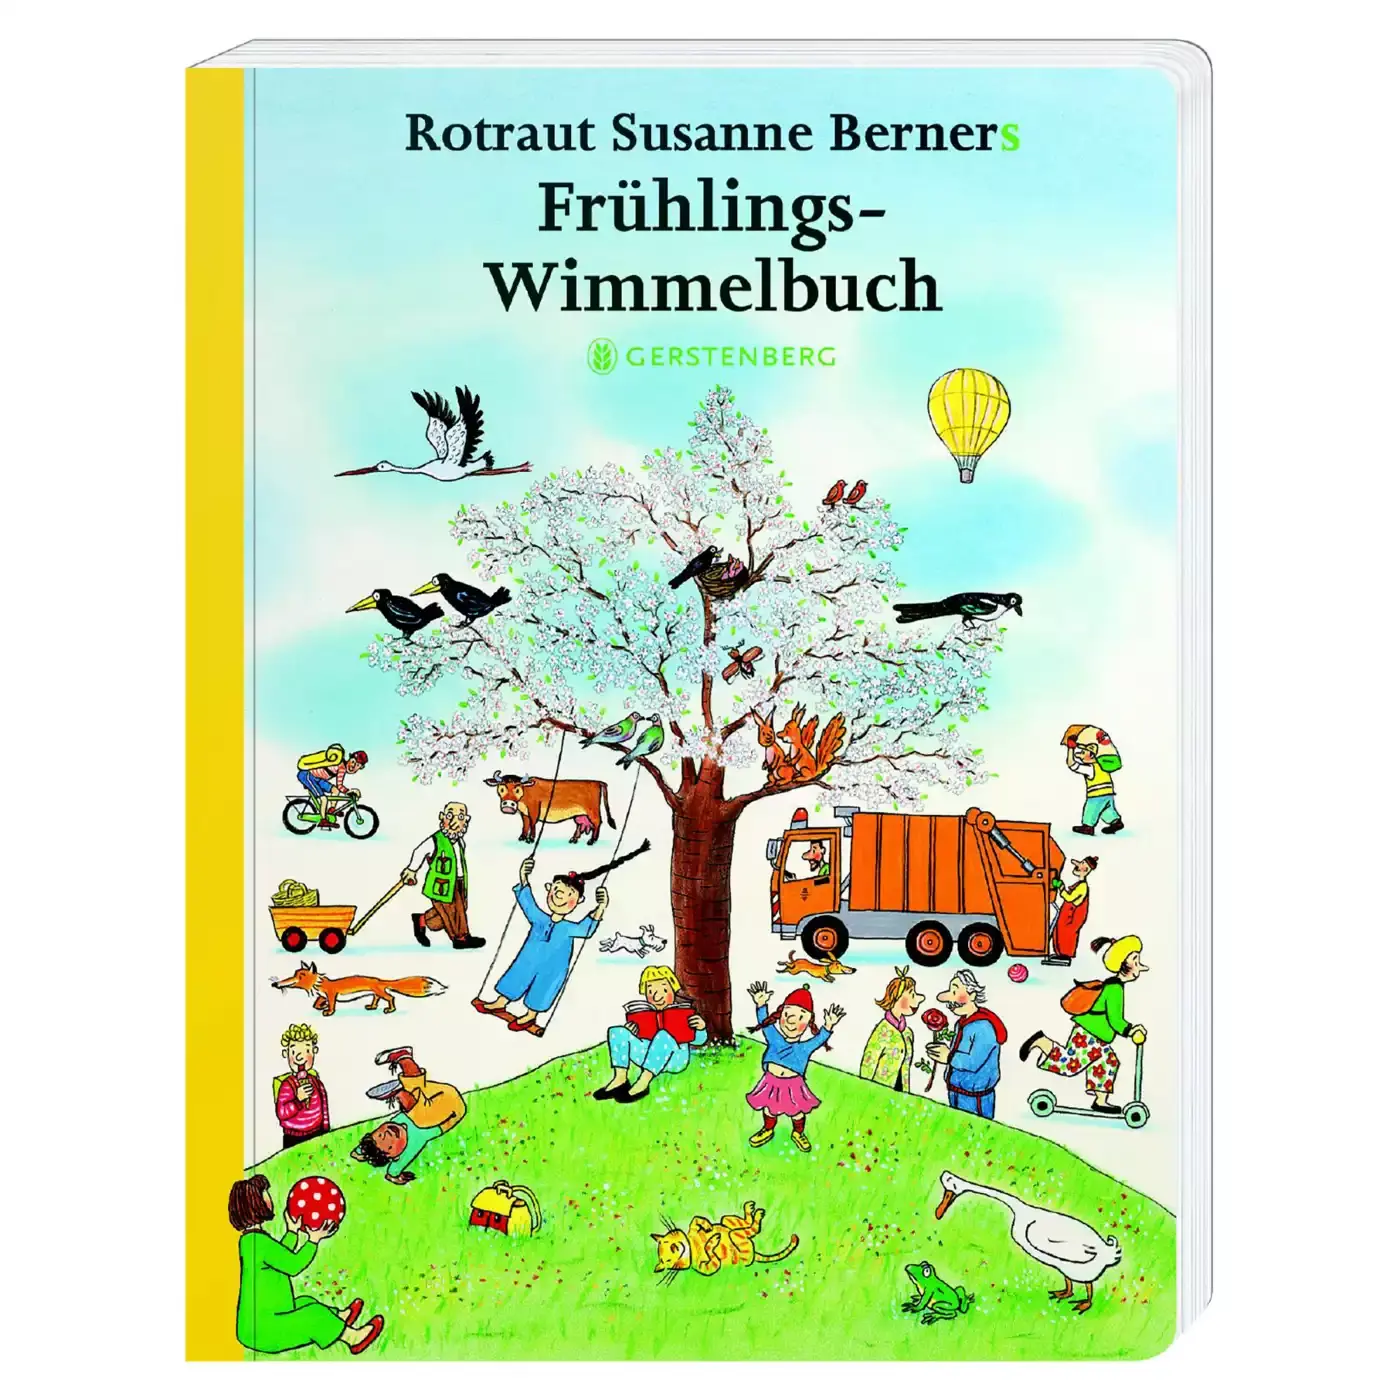 Frühlings-Wimmelbuch Gerstenberg 2000580037807 3